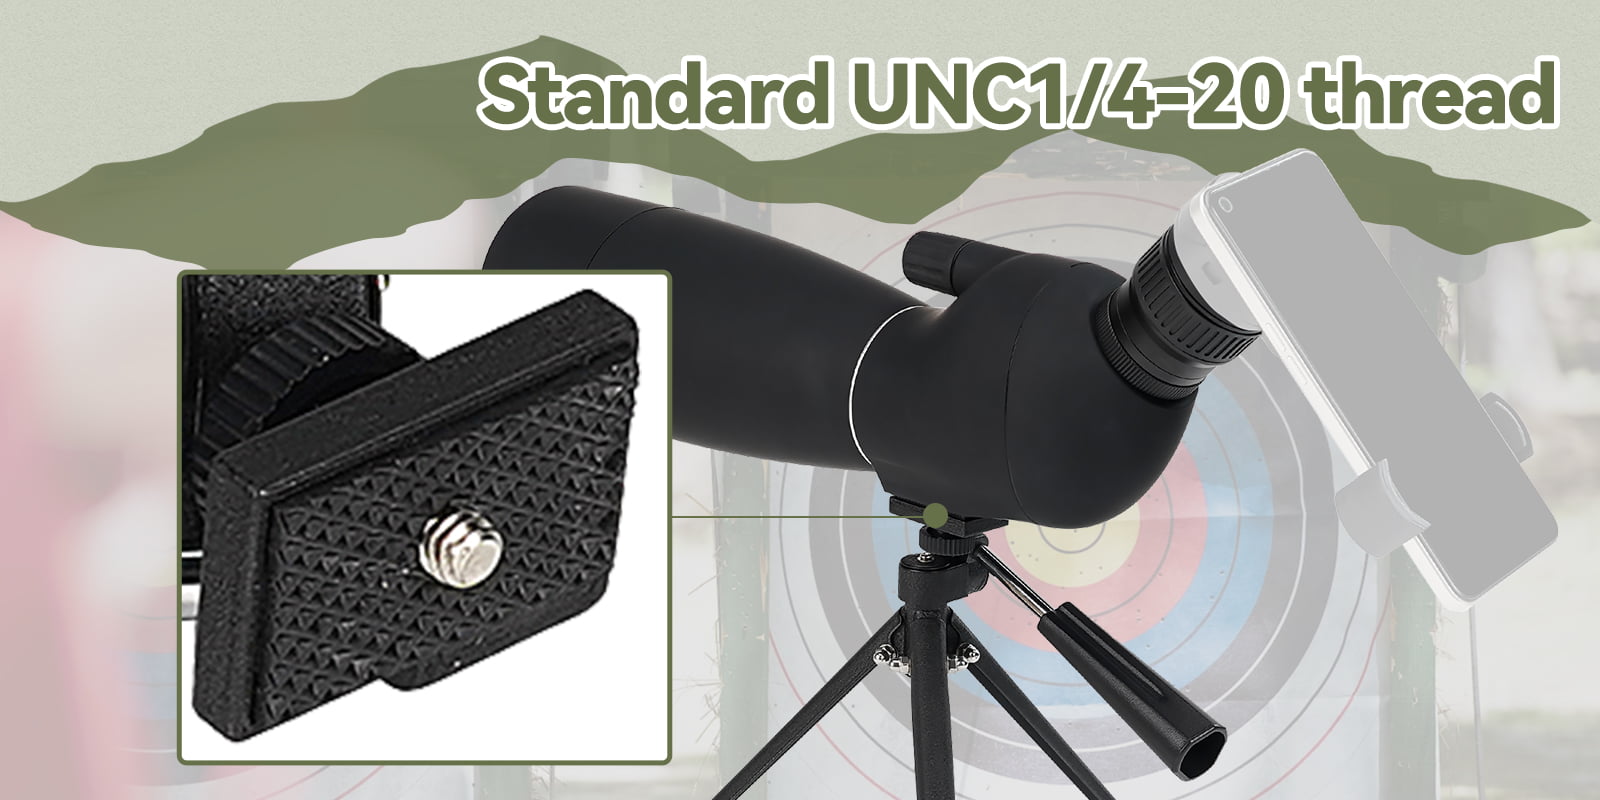 sv28plus spotting scope holder.jpg